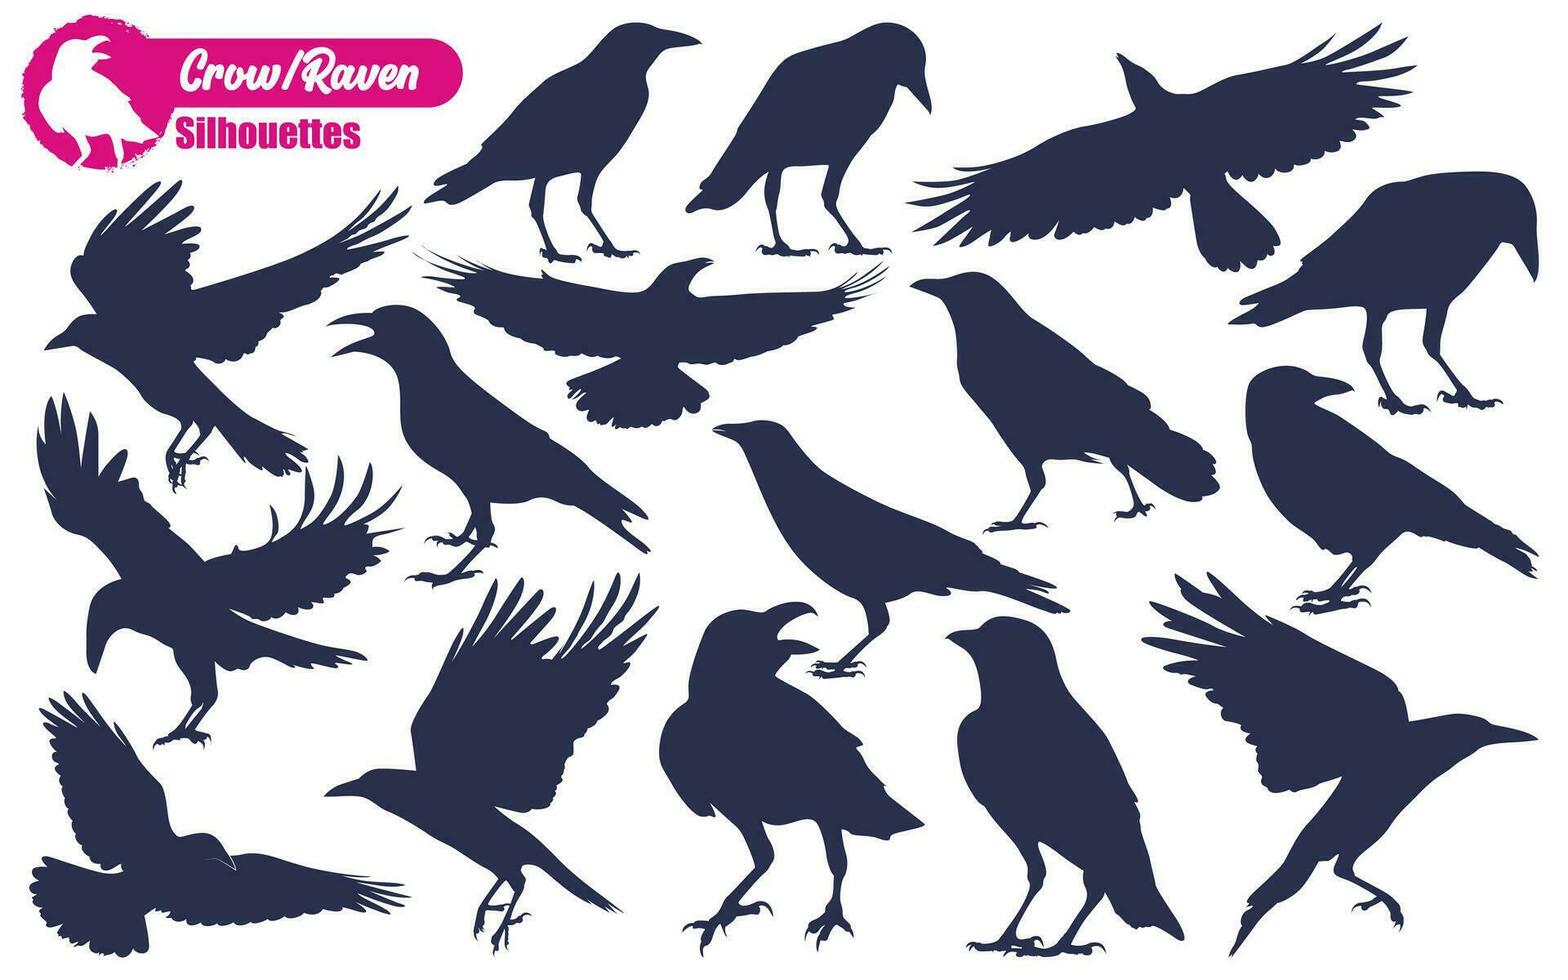 vôo Corvo ou Raven silhuetas vetor